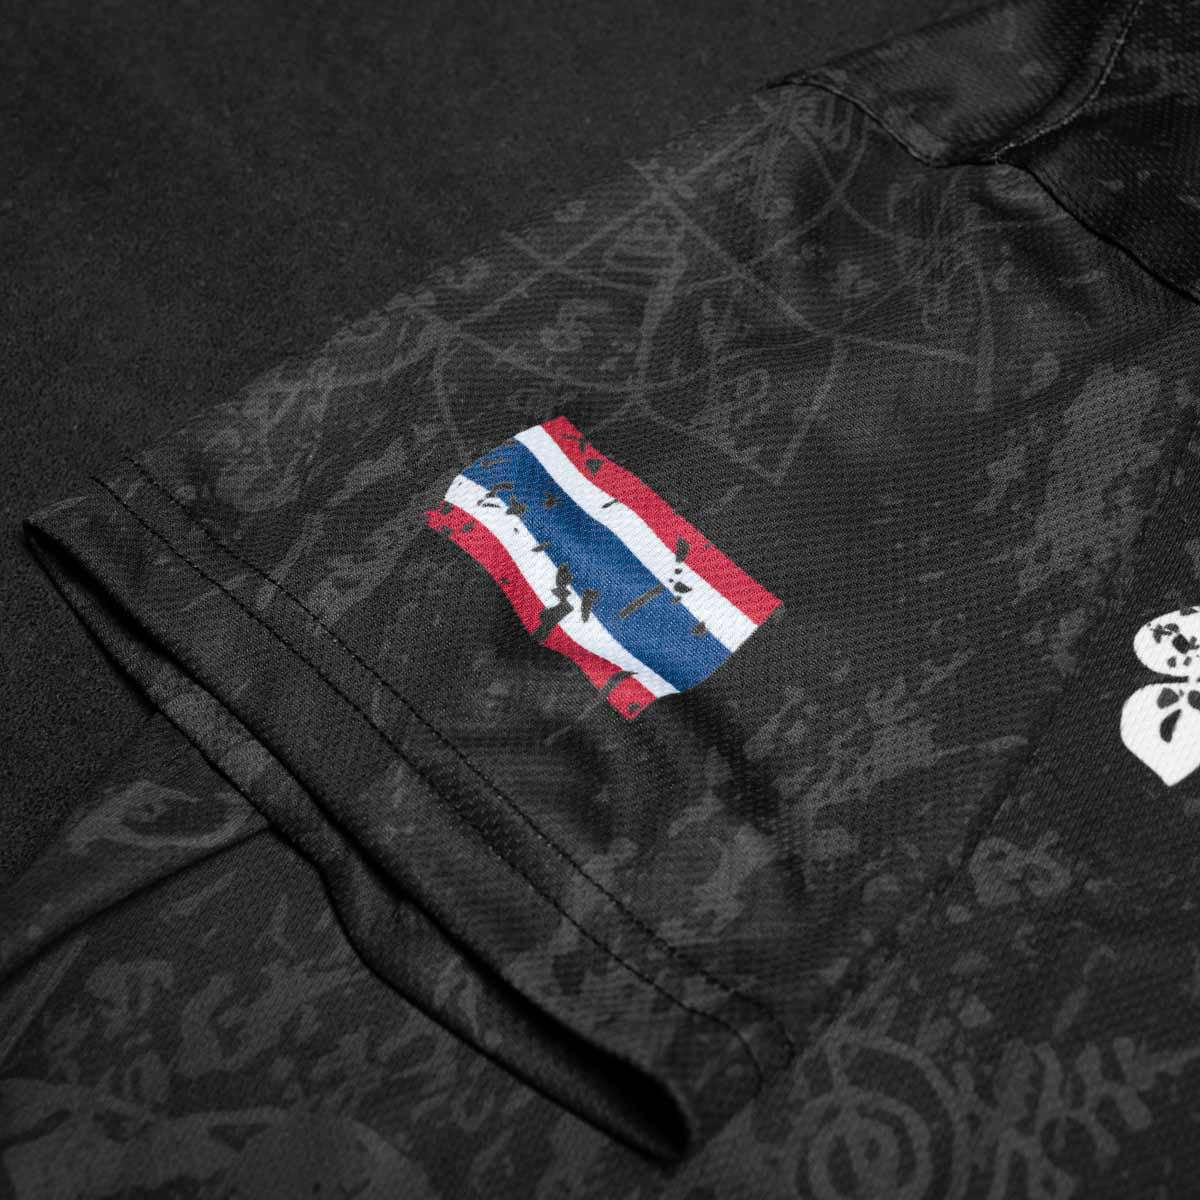 Phantom EVO Trainingsshirt im Muay Thai Design für Kampfsport Training. Mit thailändischer Schrift und Sak Yant Grafiken und thailändischer Flagge.